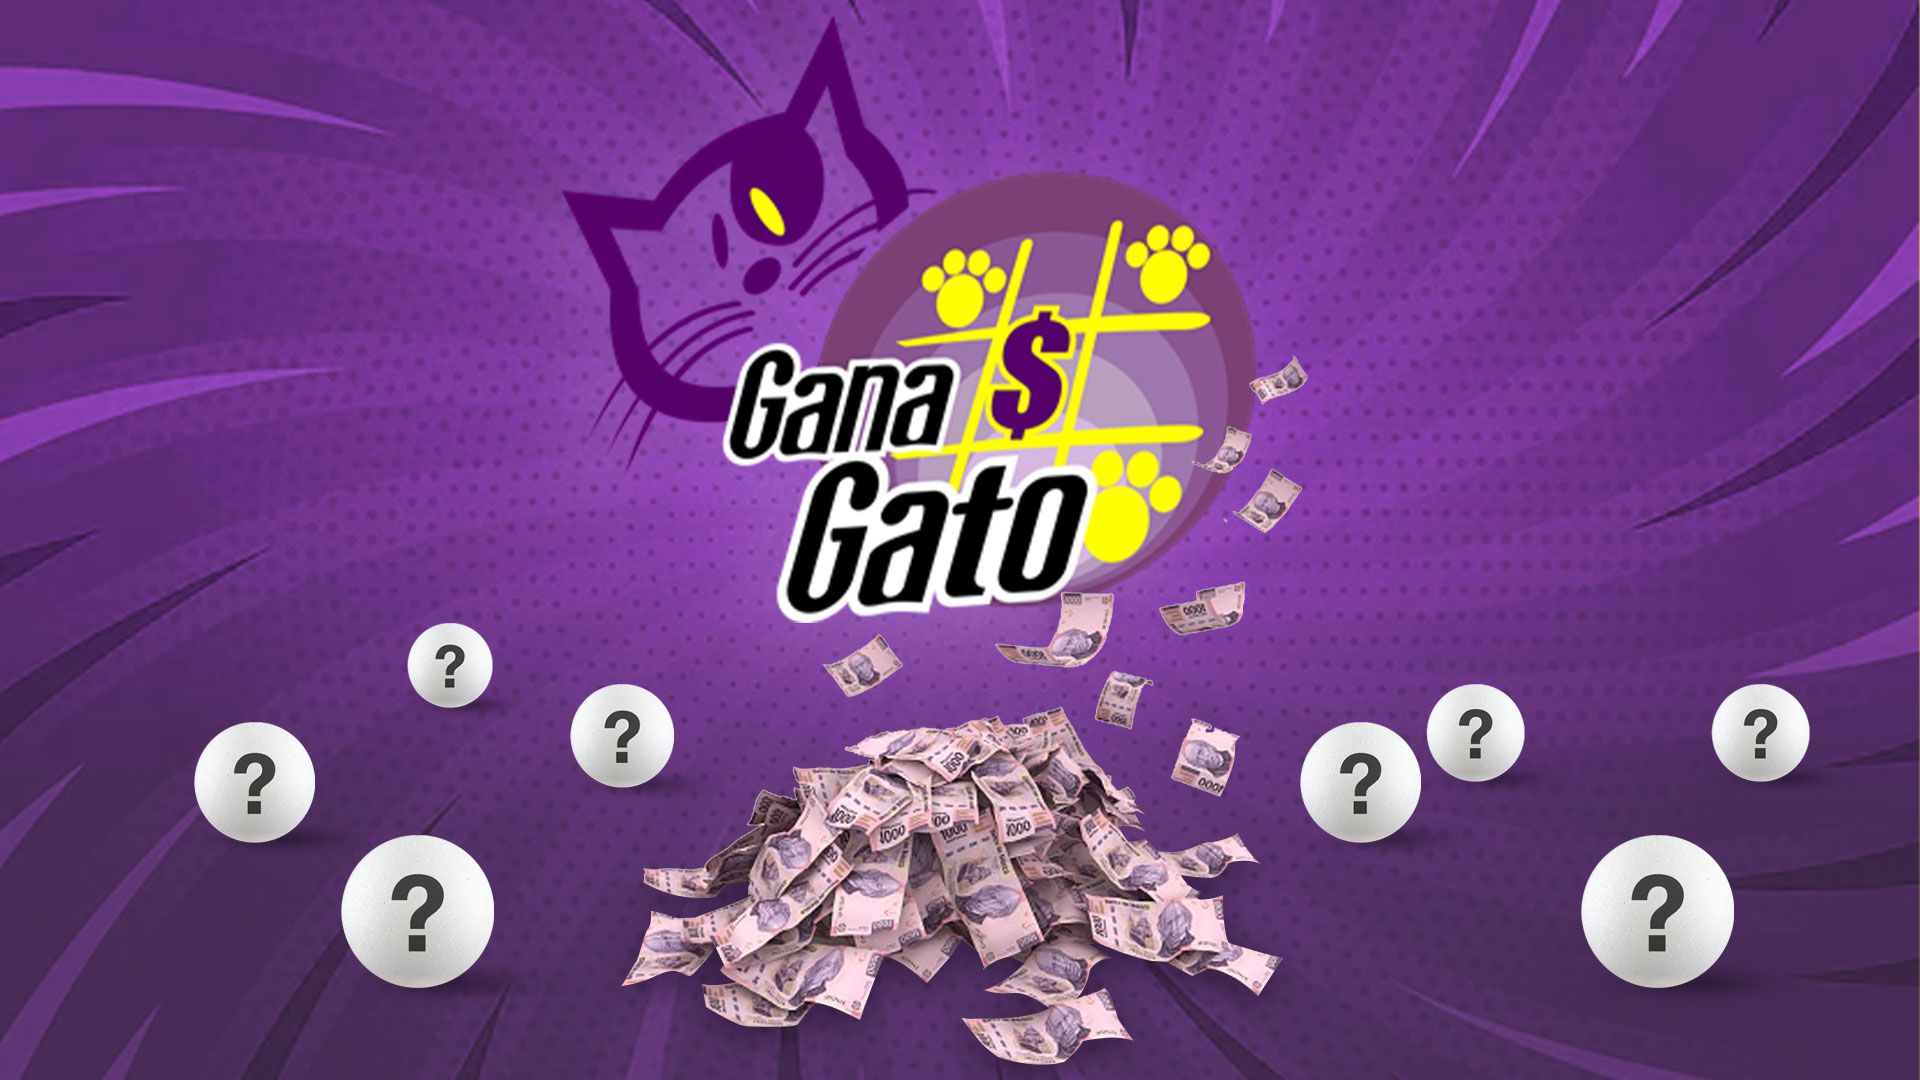 En el sorteo de hoy, Gana Gato entregó $375,140.81 pesos en premios (Infobae/Jovani Pérez)